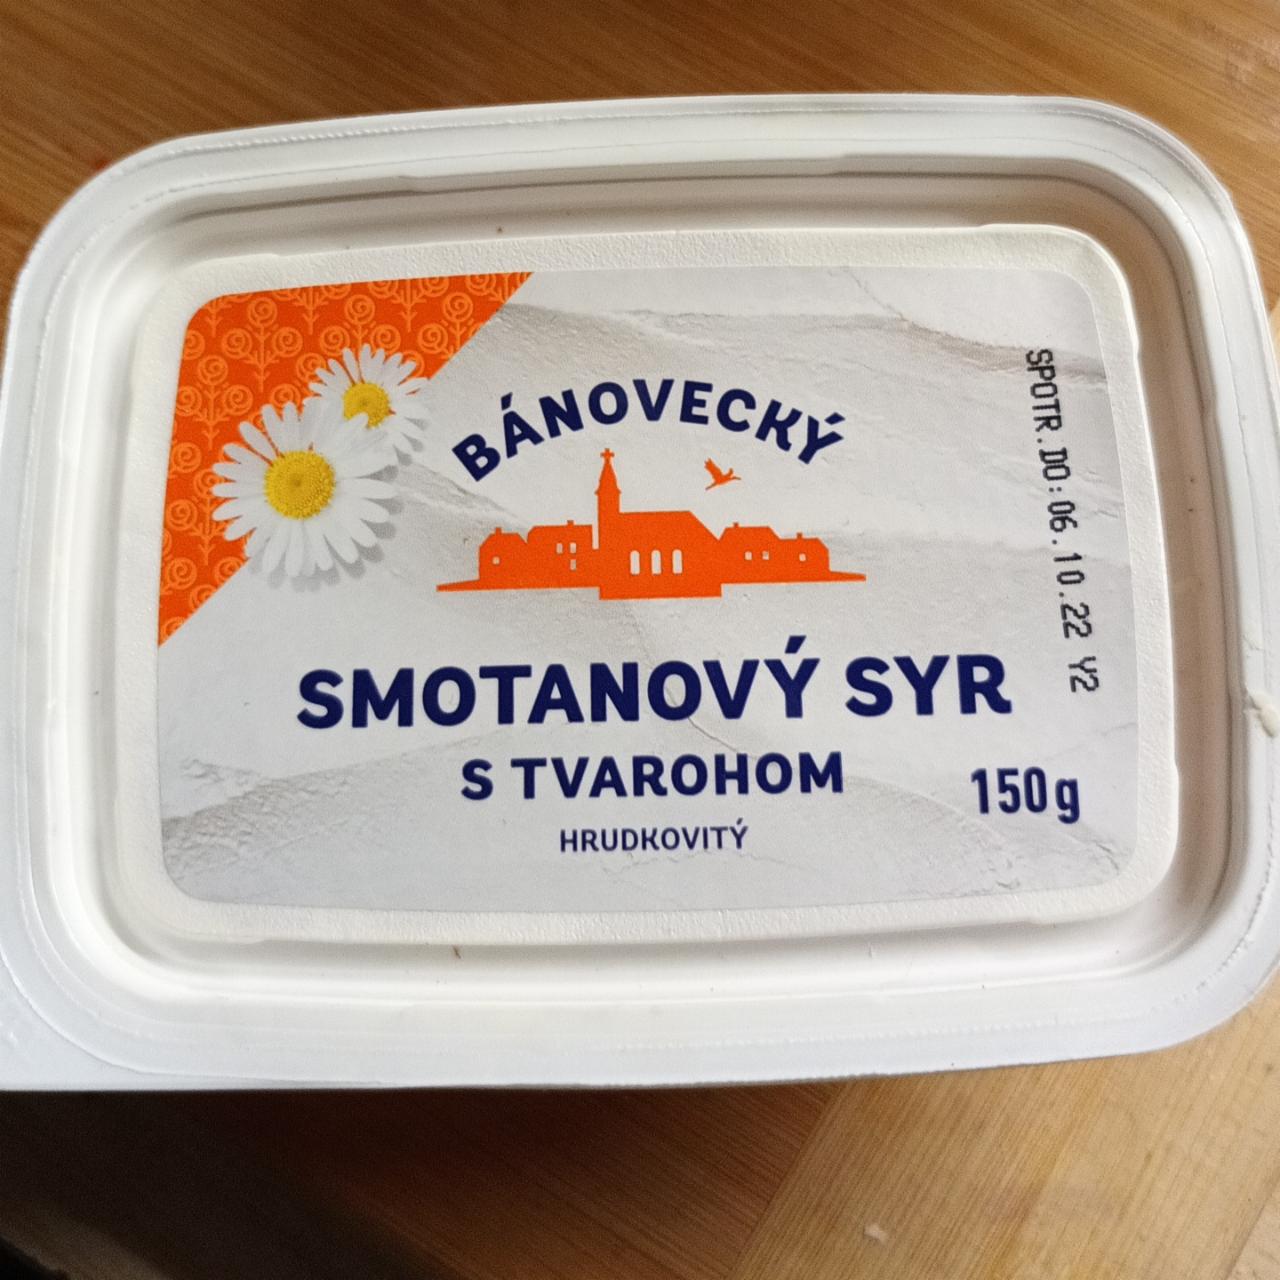 Fotografie - Bánovecký smotanový syr s tvarohom